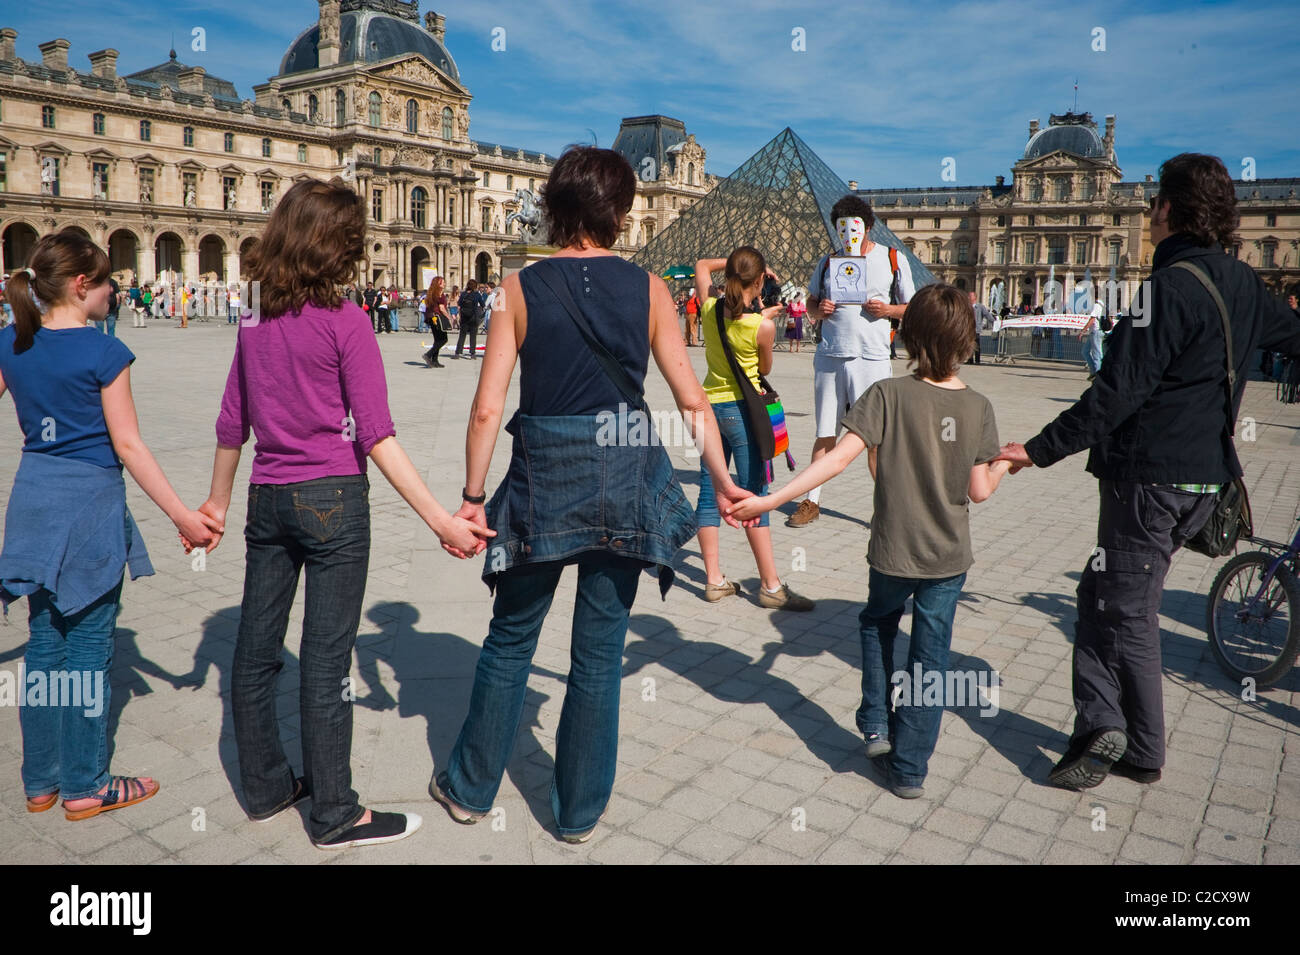 Parigi, Francia, gli ambientalisti del gruppo protestano contro l'energia nucleare, formando una catena umana al Museo del Louvre, protesta di famiglia attivista ambientale Foto Stock